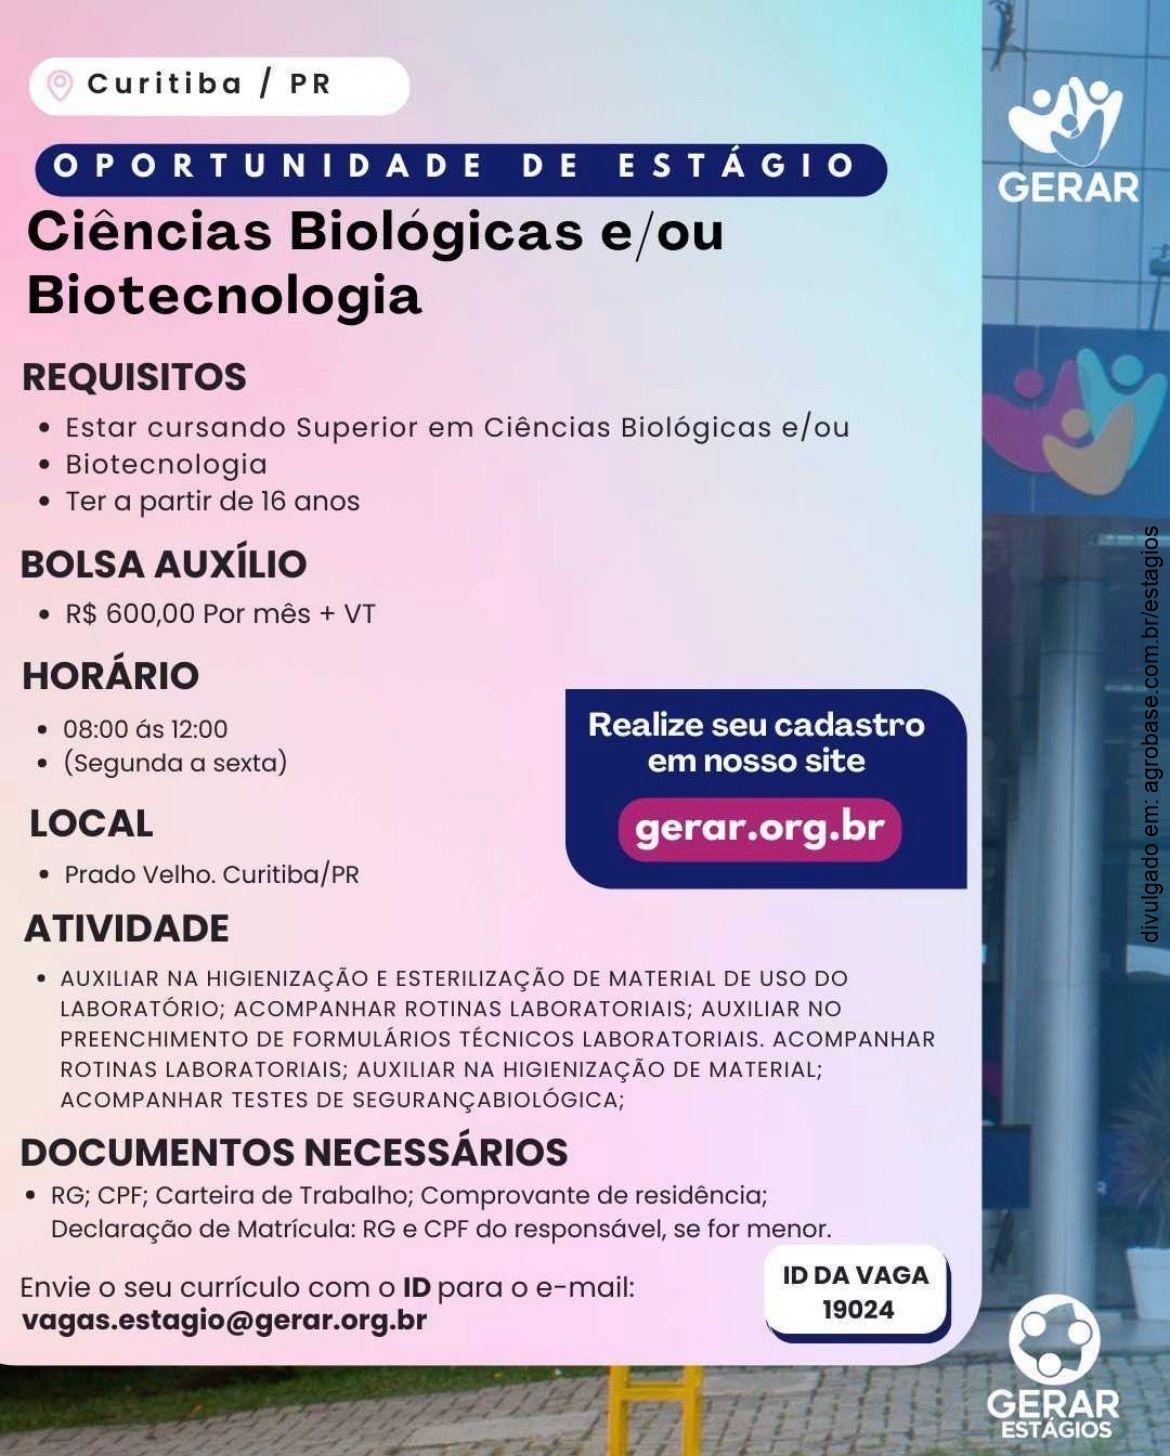 Estágio em ciências biológicas e/ou biotecnologia – Curitiba/PR [manhã]